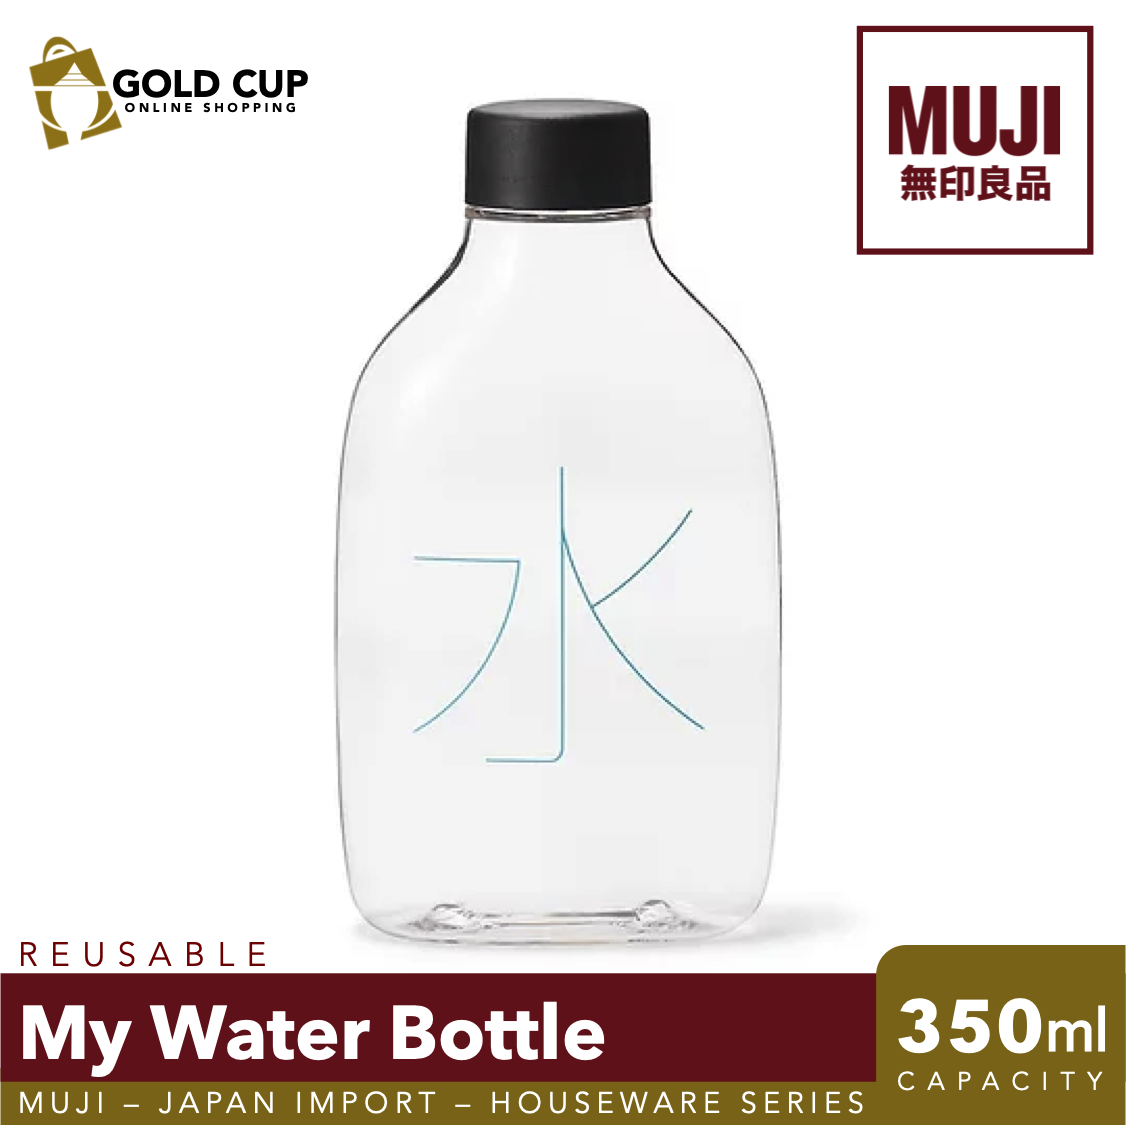 MUJI Glass - 350ml